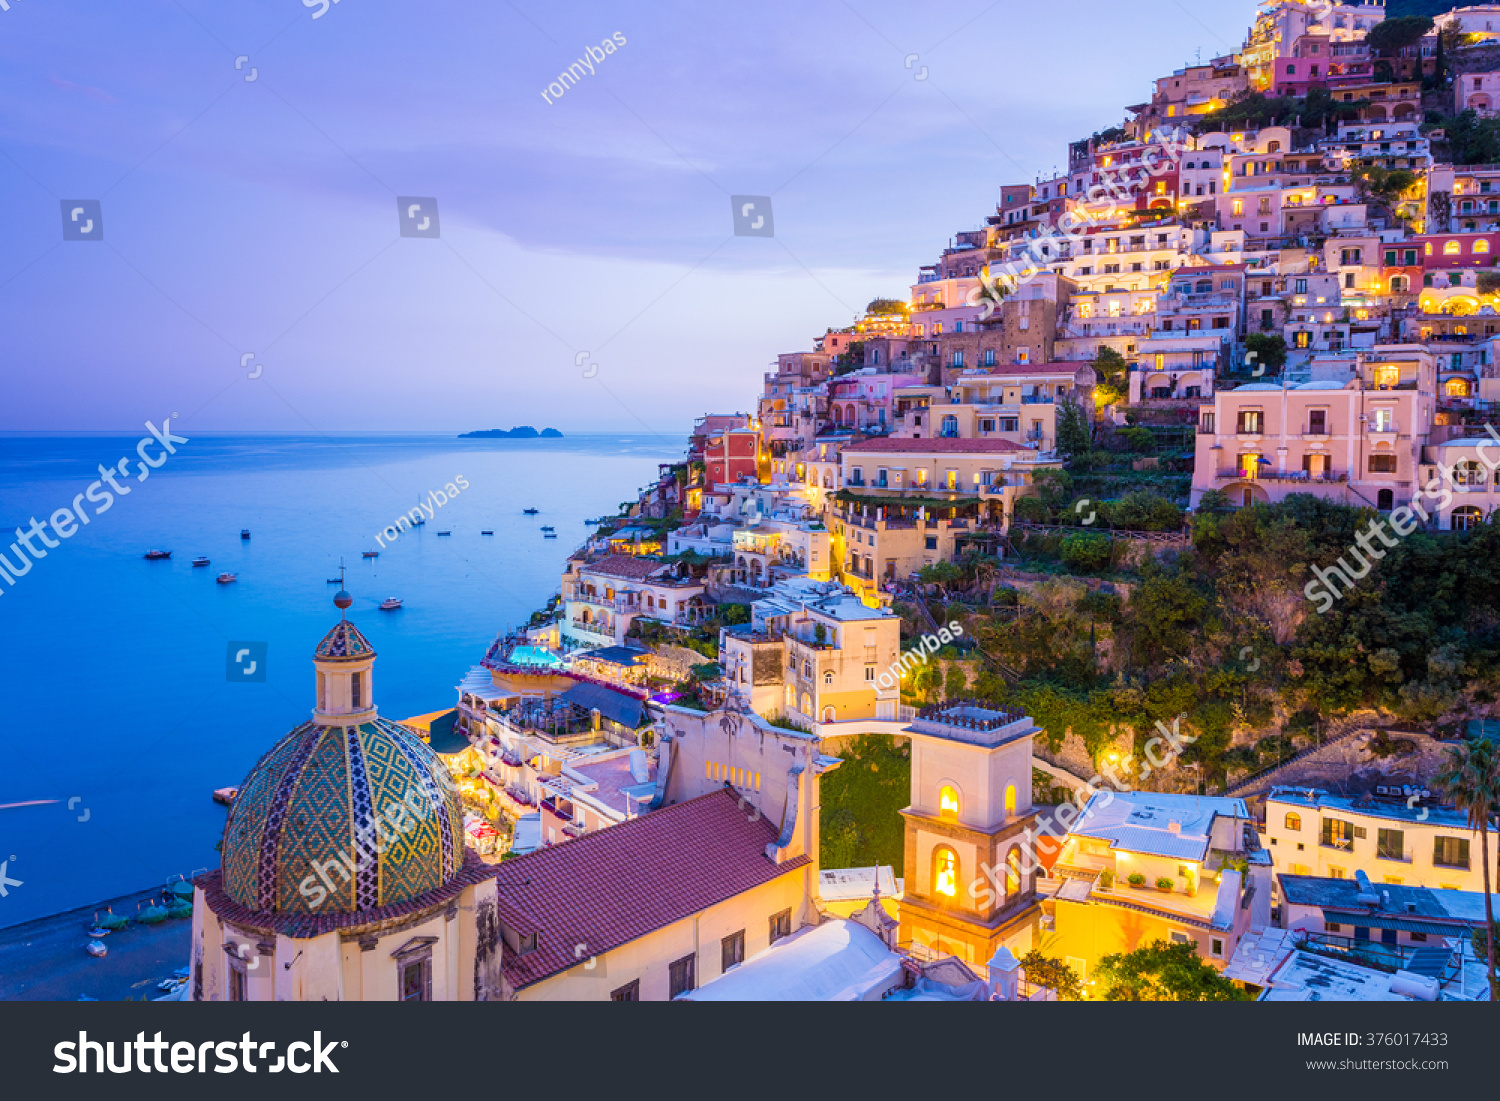 Positano Amalfi Coast Campania Sorrento Italy Stock Photo 376017433 ...